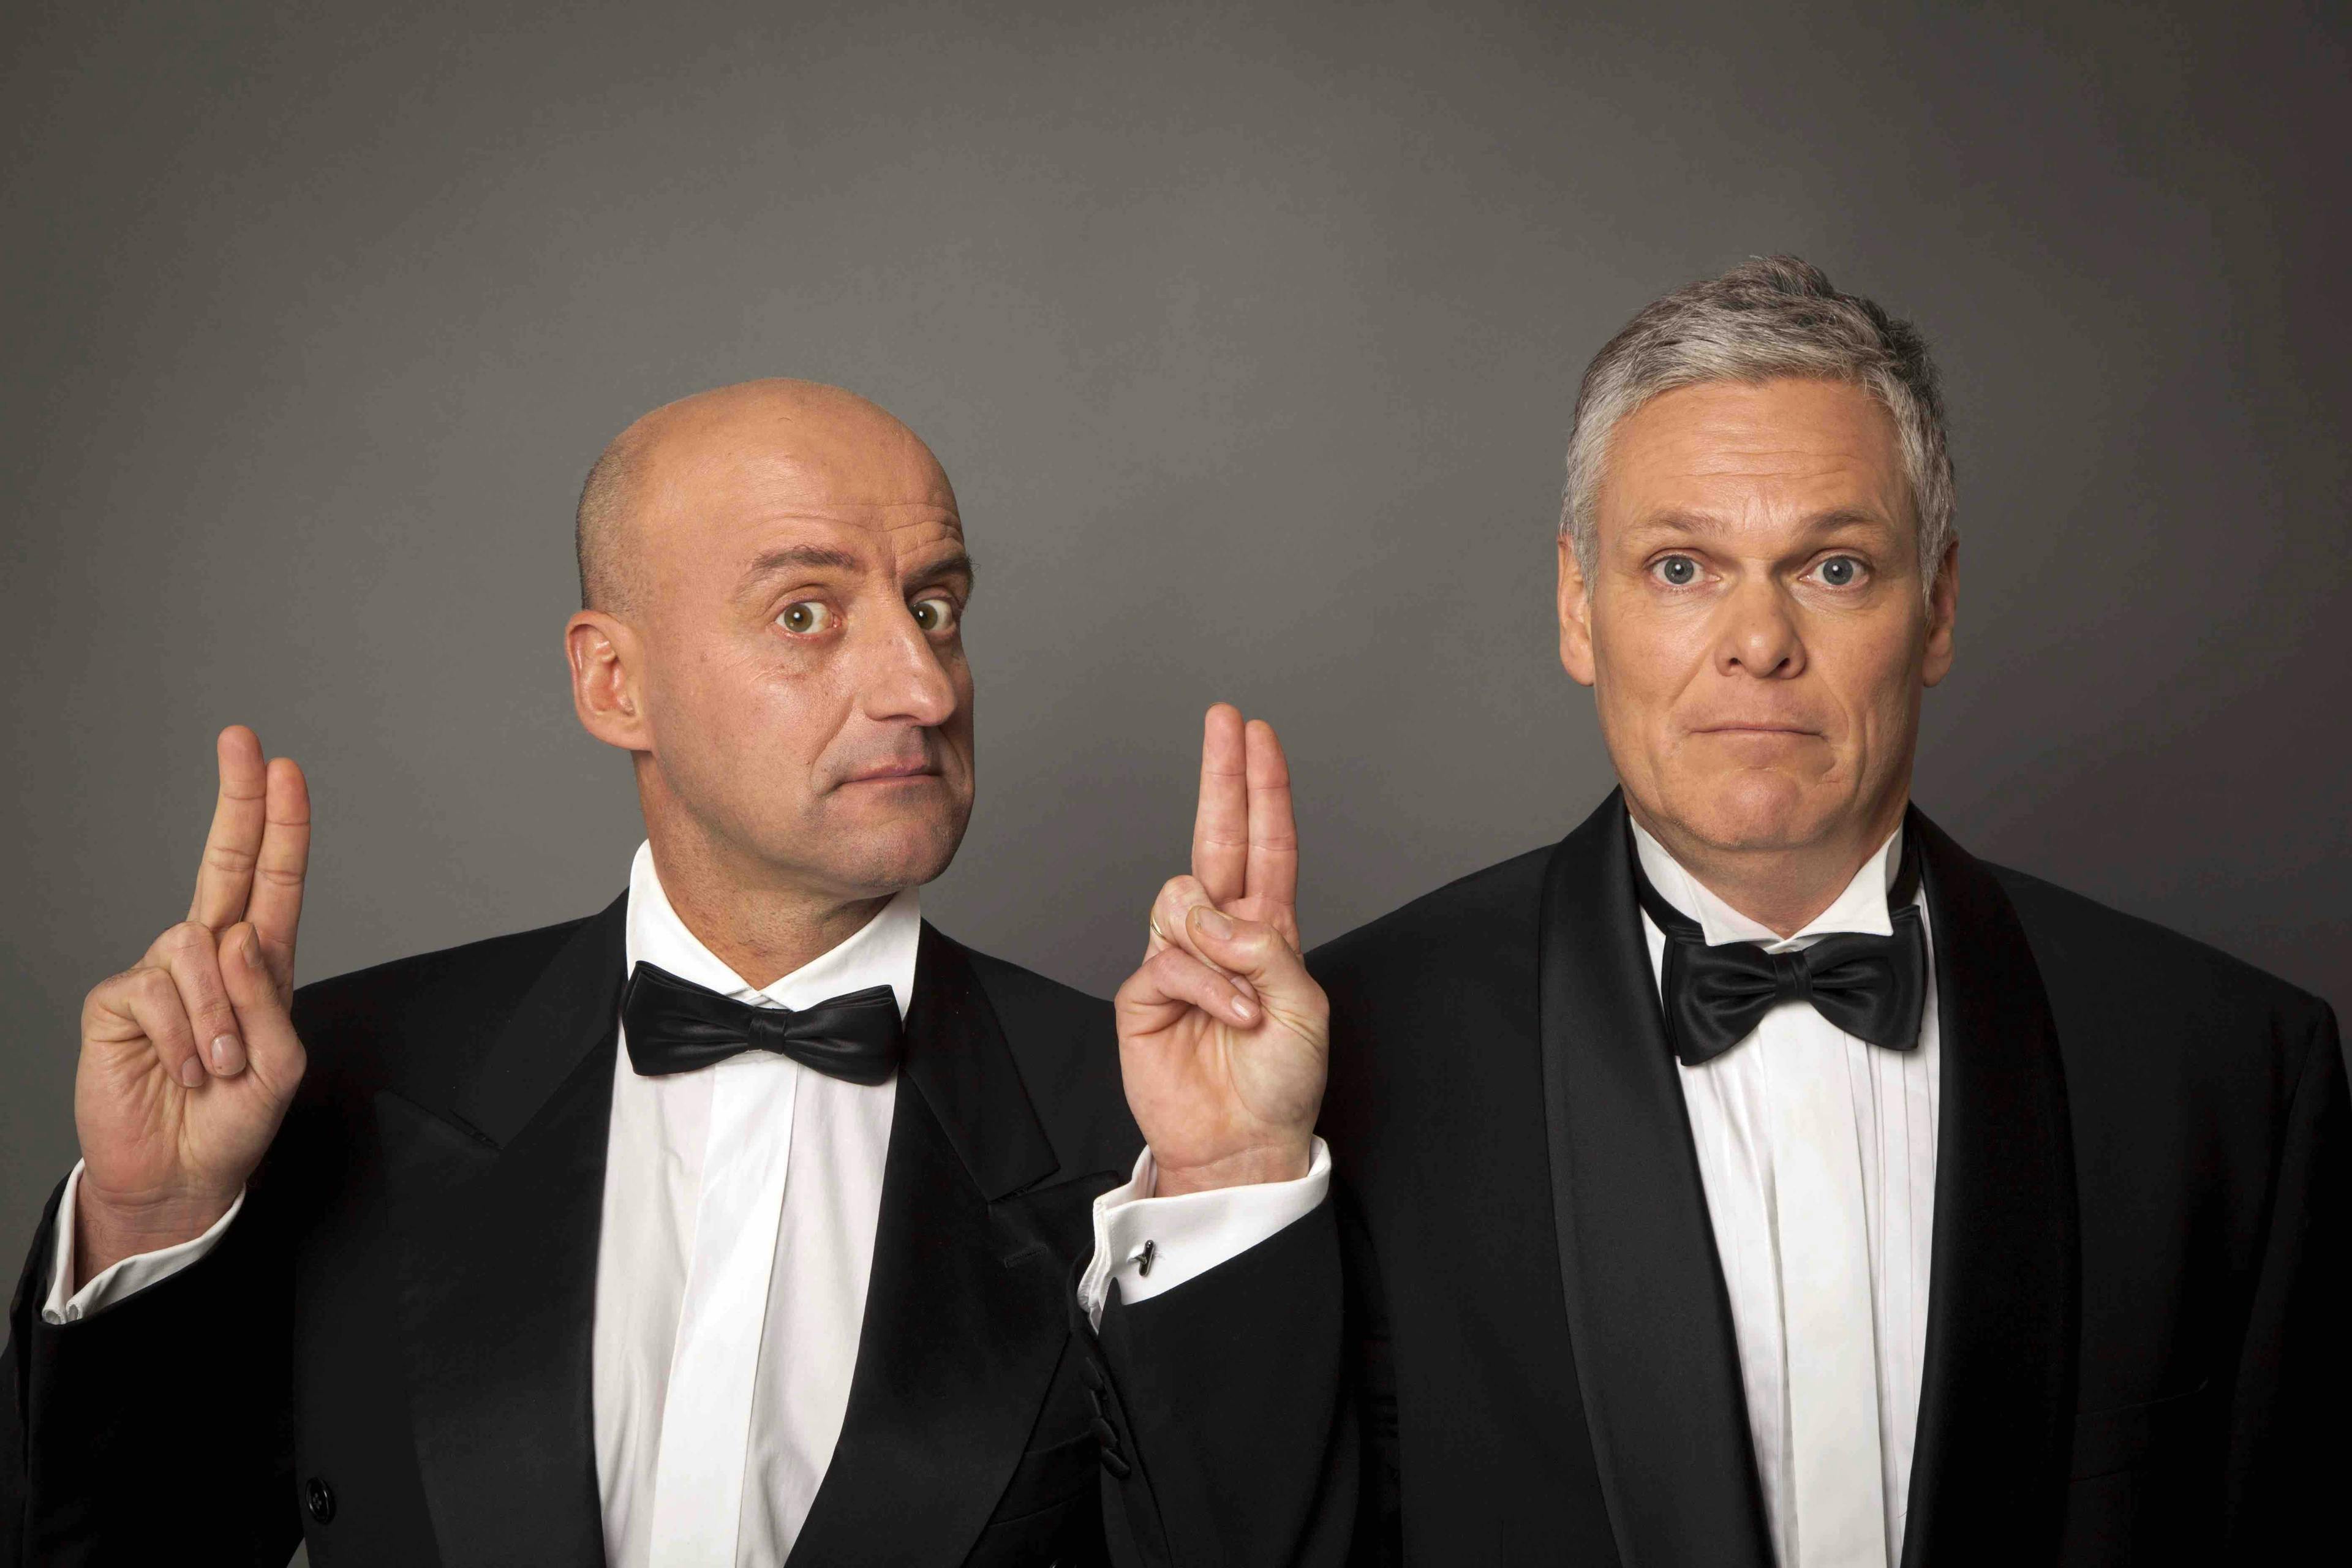 Joep van Deudekom en Rob Urgert in zwart pak die twee vingers opsteken bij grijze achtergrond